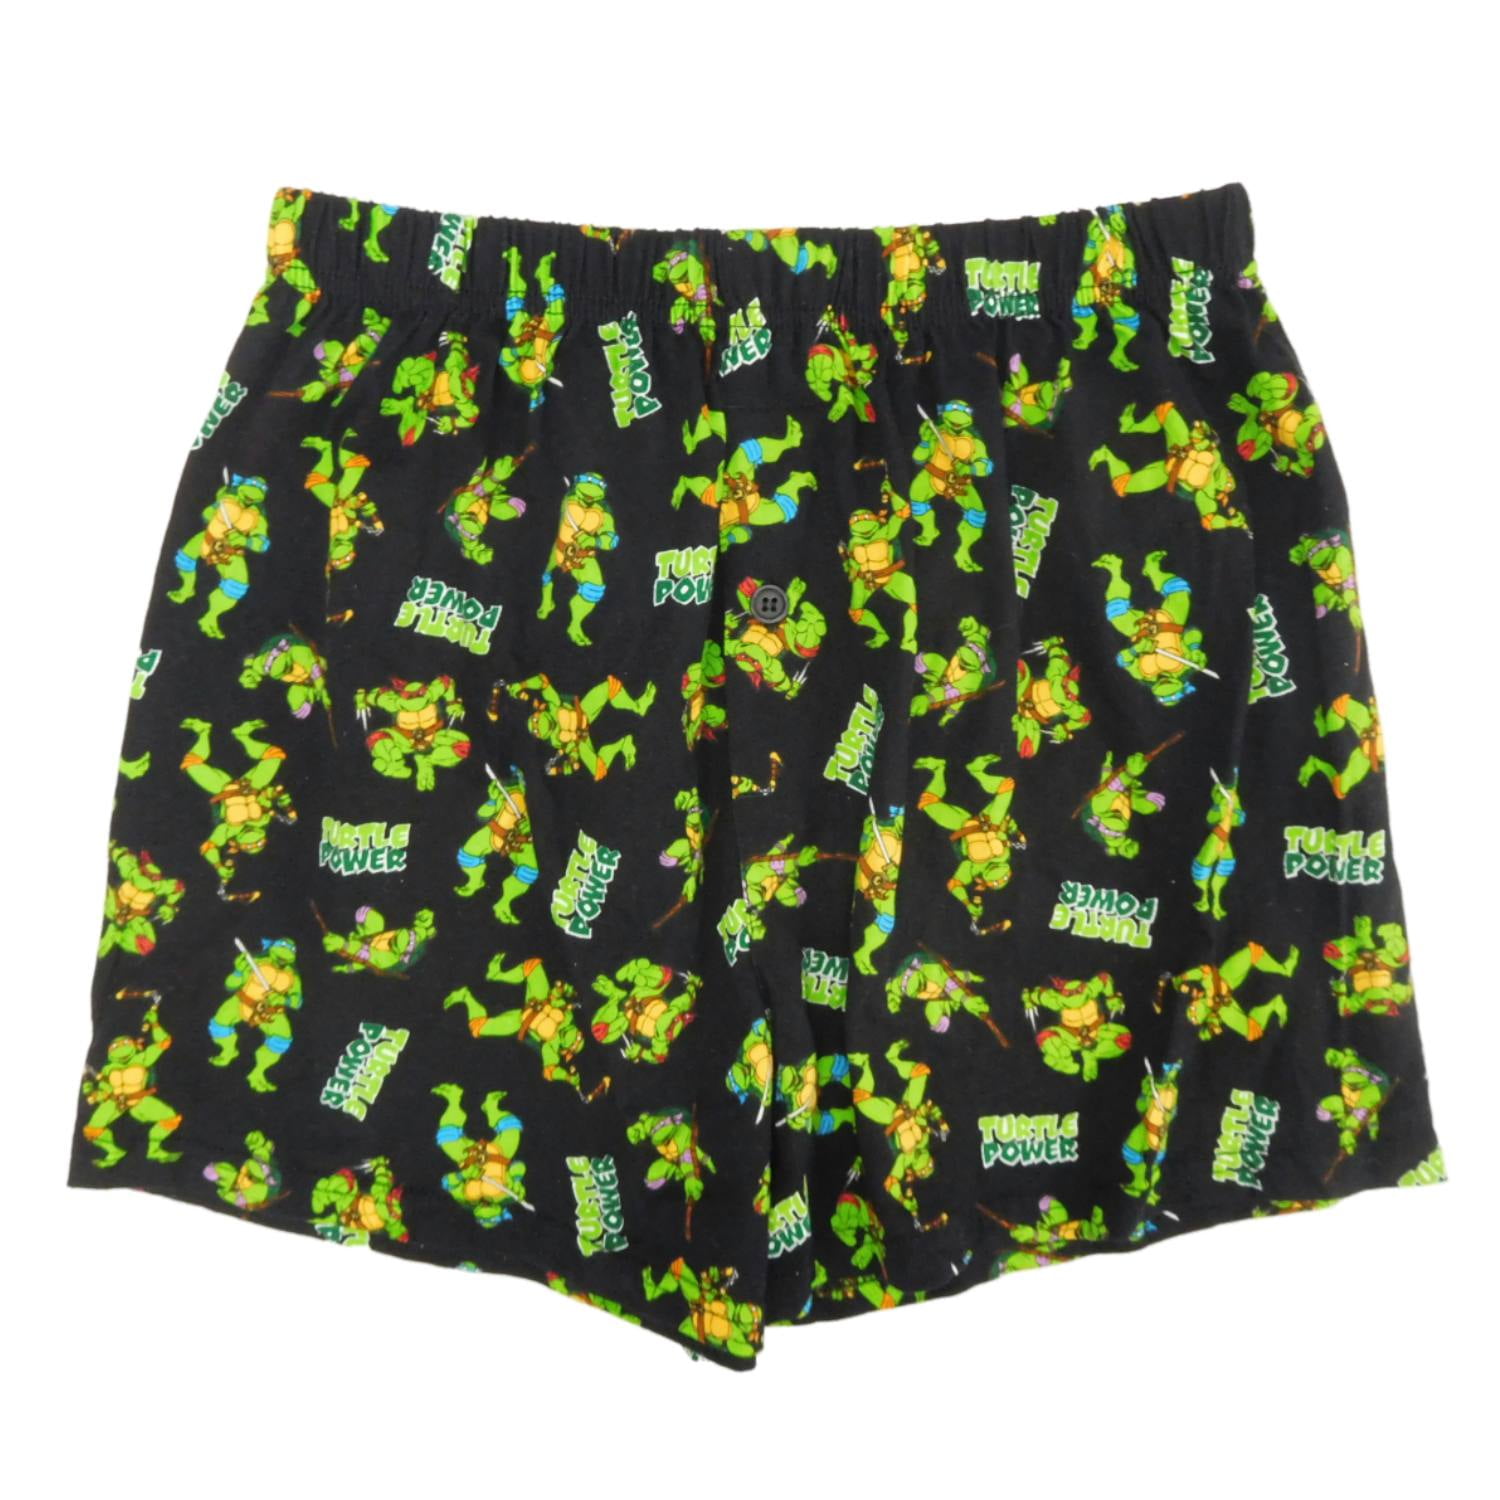 Ninja Turtles Jungen Shorts